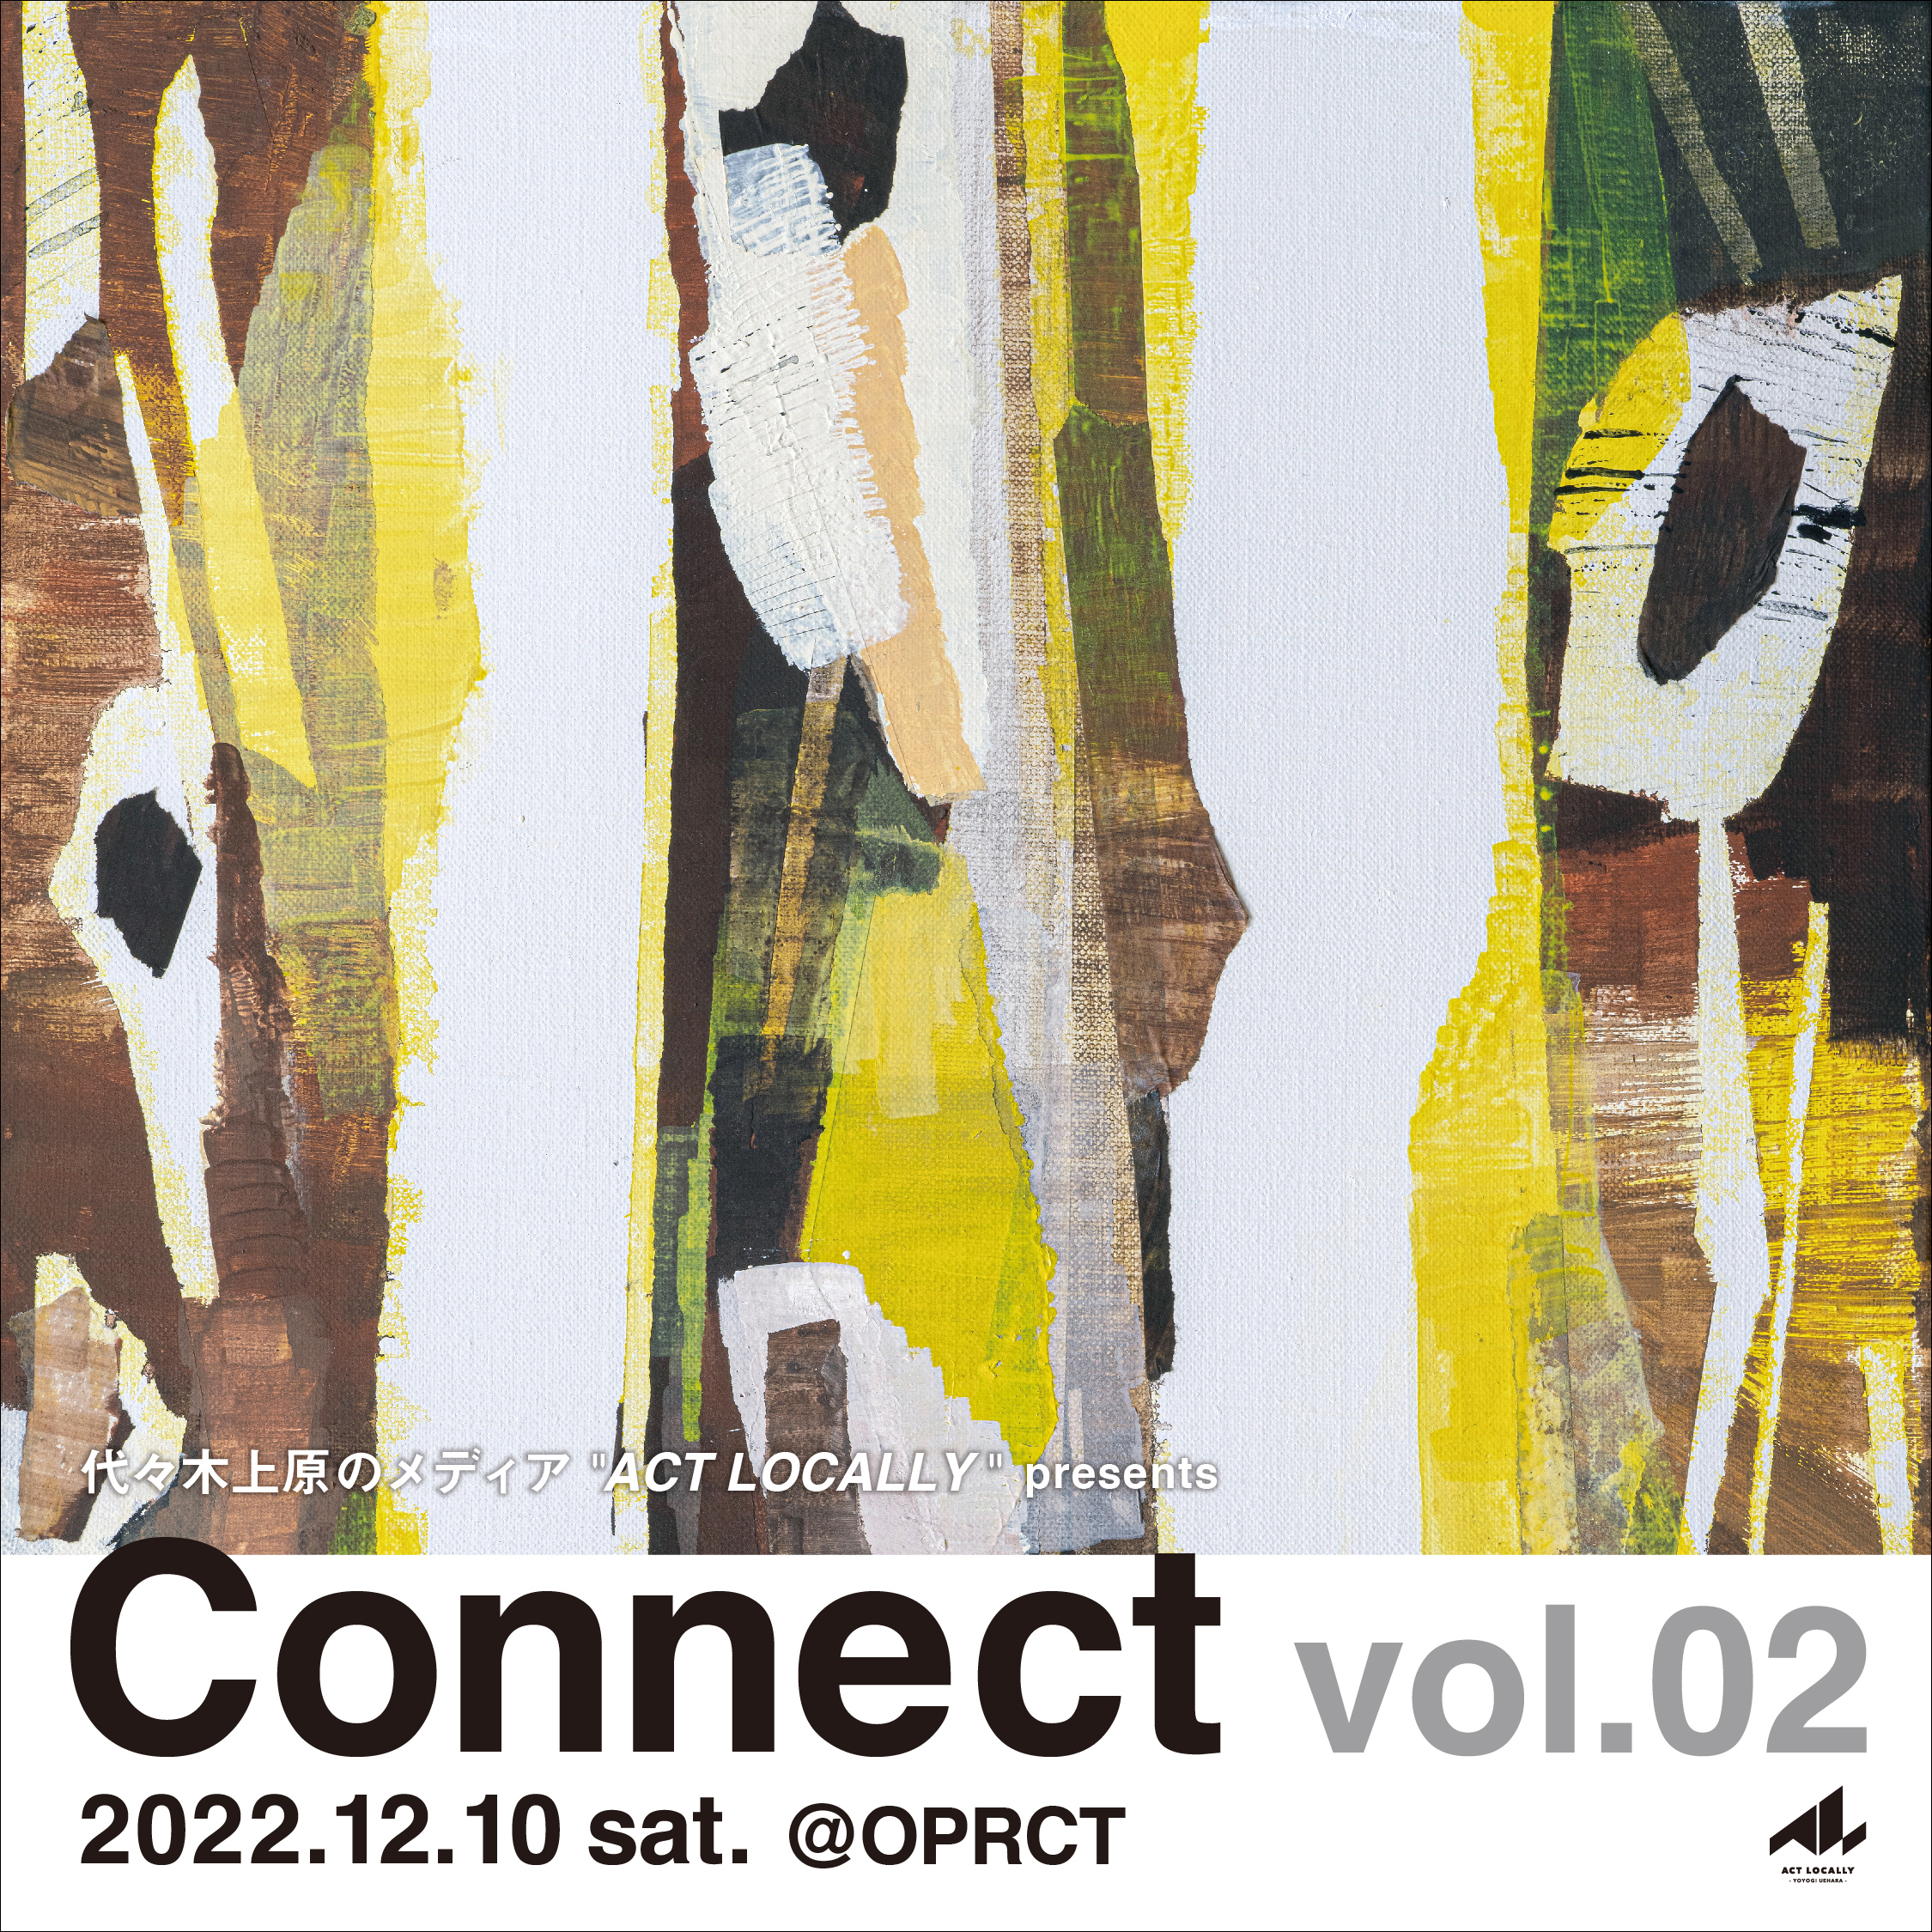 代々木上原のメディア “ACT LOCALLY” presents Connect vol.02